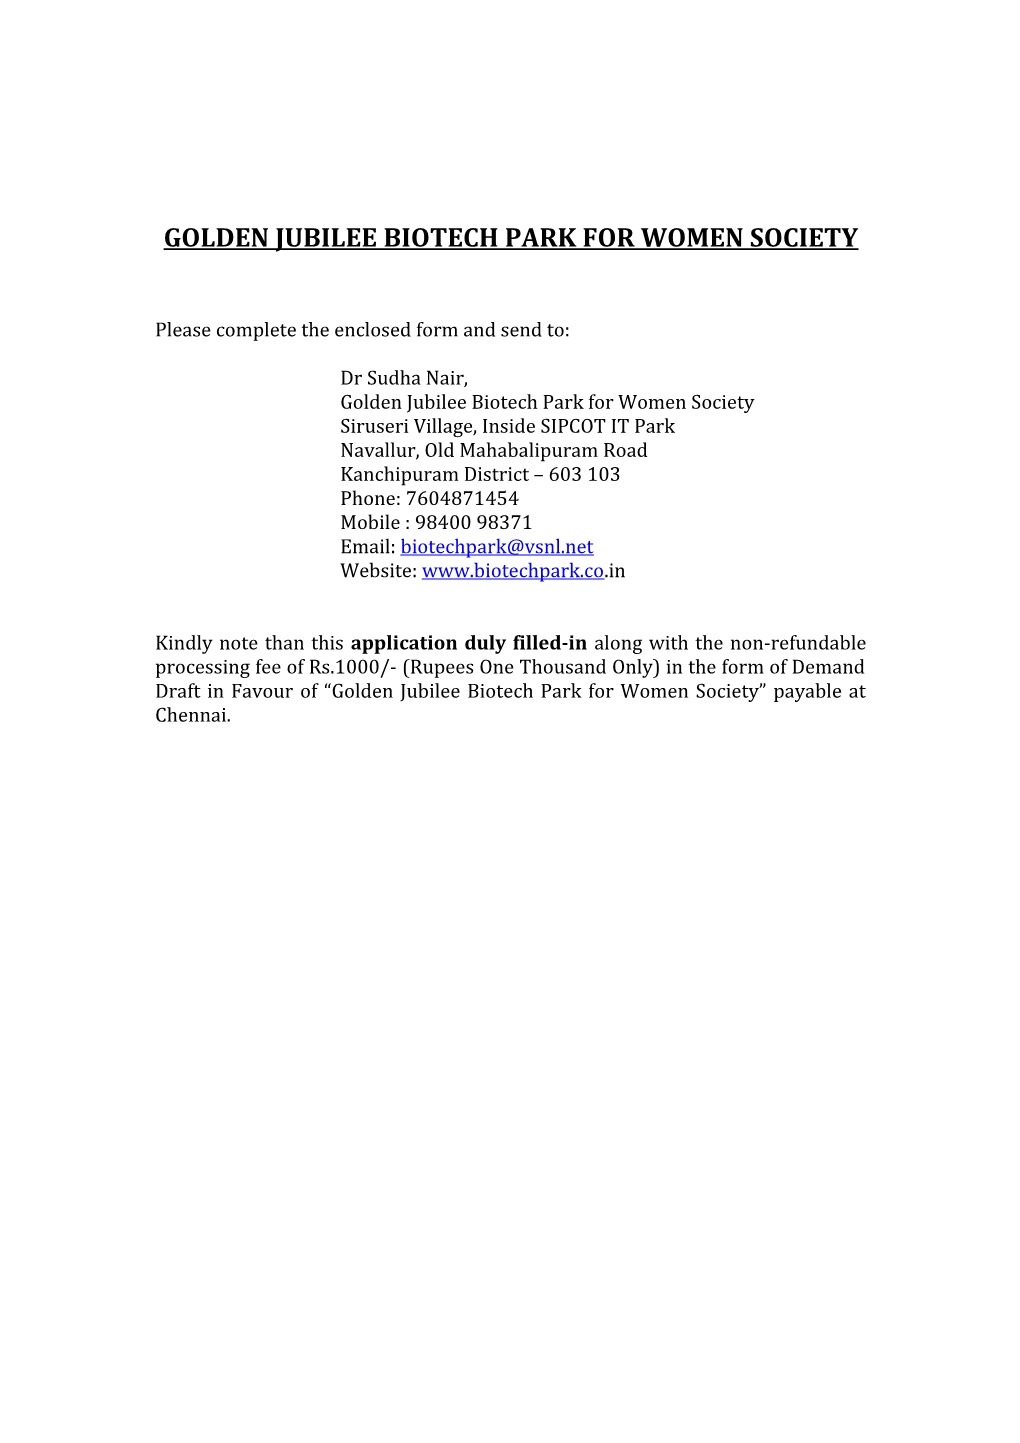 Golden Jubilee Biotech Park for Women Society